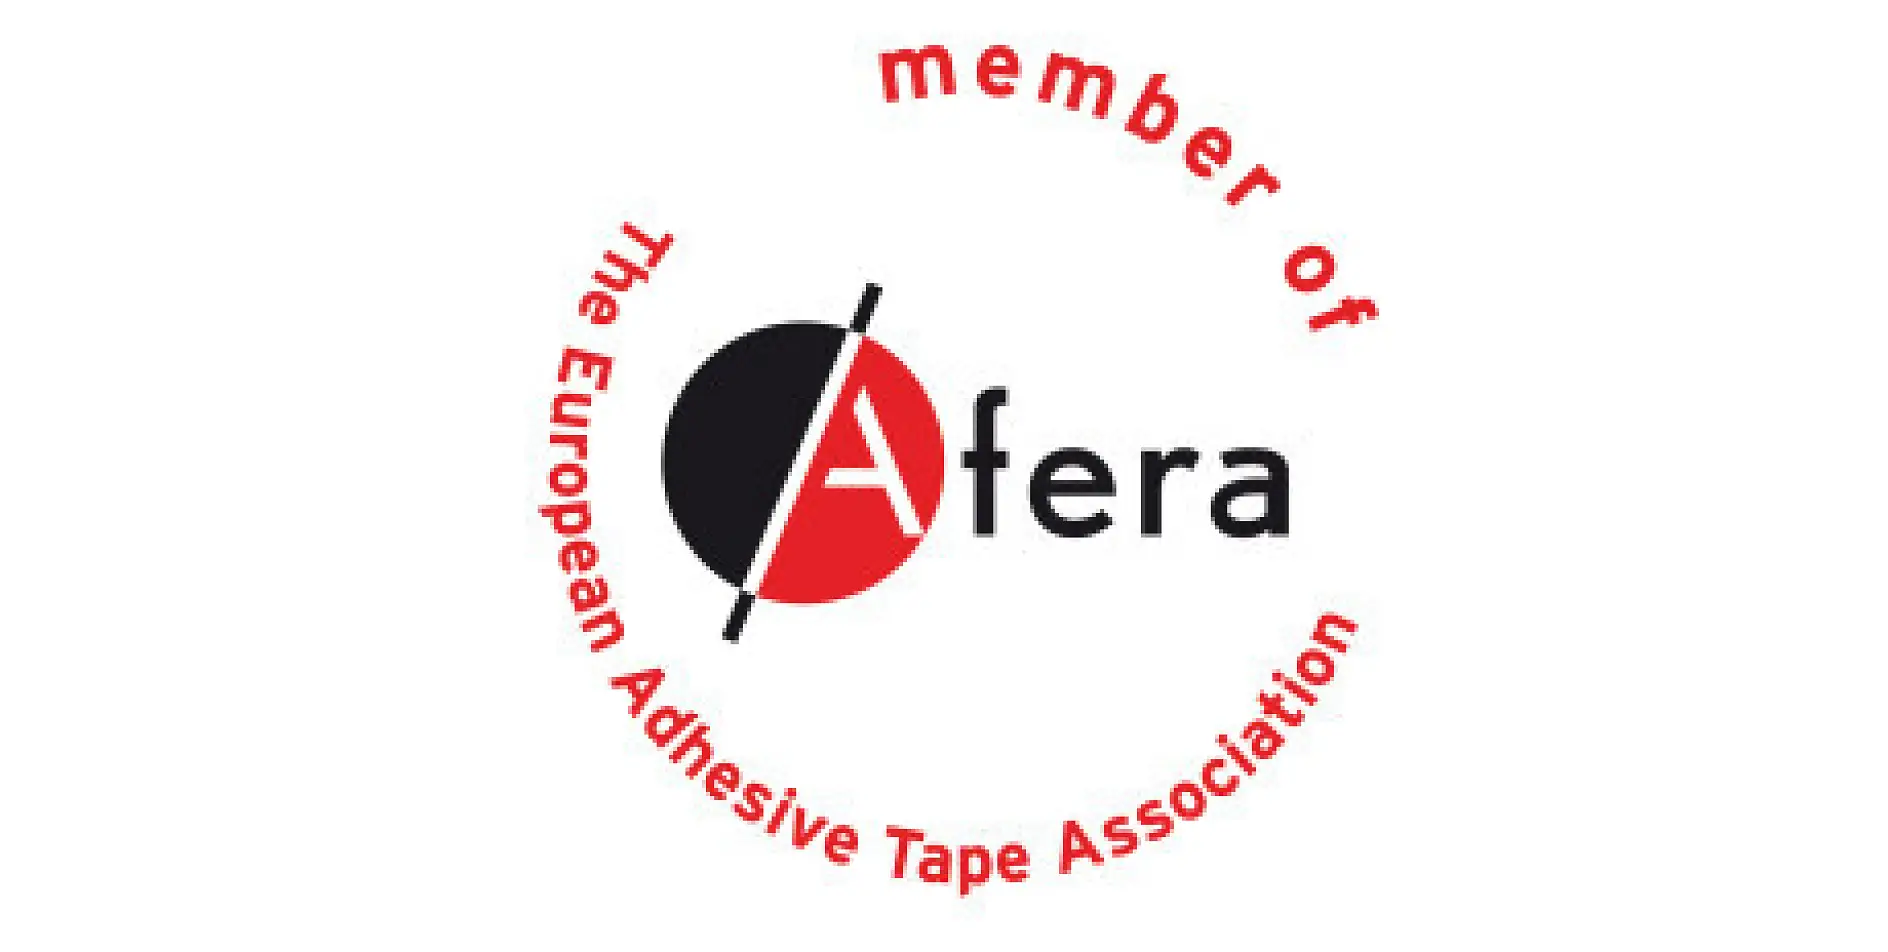 tesa est membre de l’Afera, l’Association européenne des fabricants de rubans adhésifs. Elle regroupe des fabricants, des fournisseurs de matières premières et de machines, des transformateurs (par exemple dans l’impression, la découpe et la plastification), et les organisations nationales du secteur.